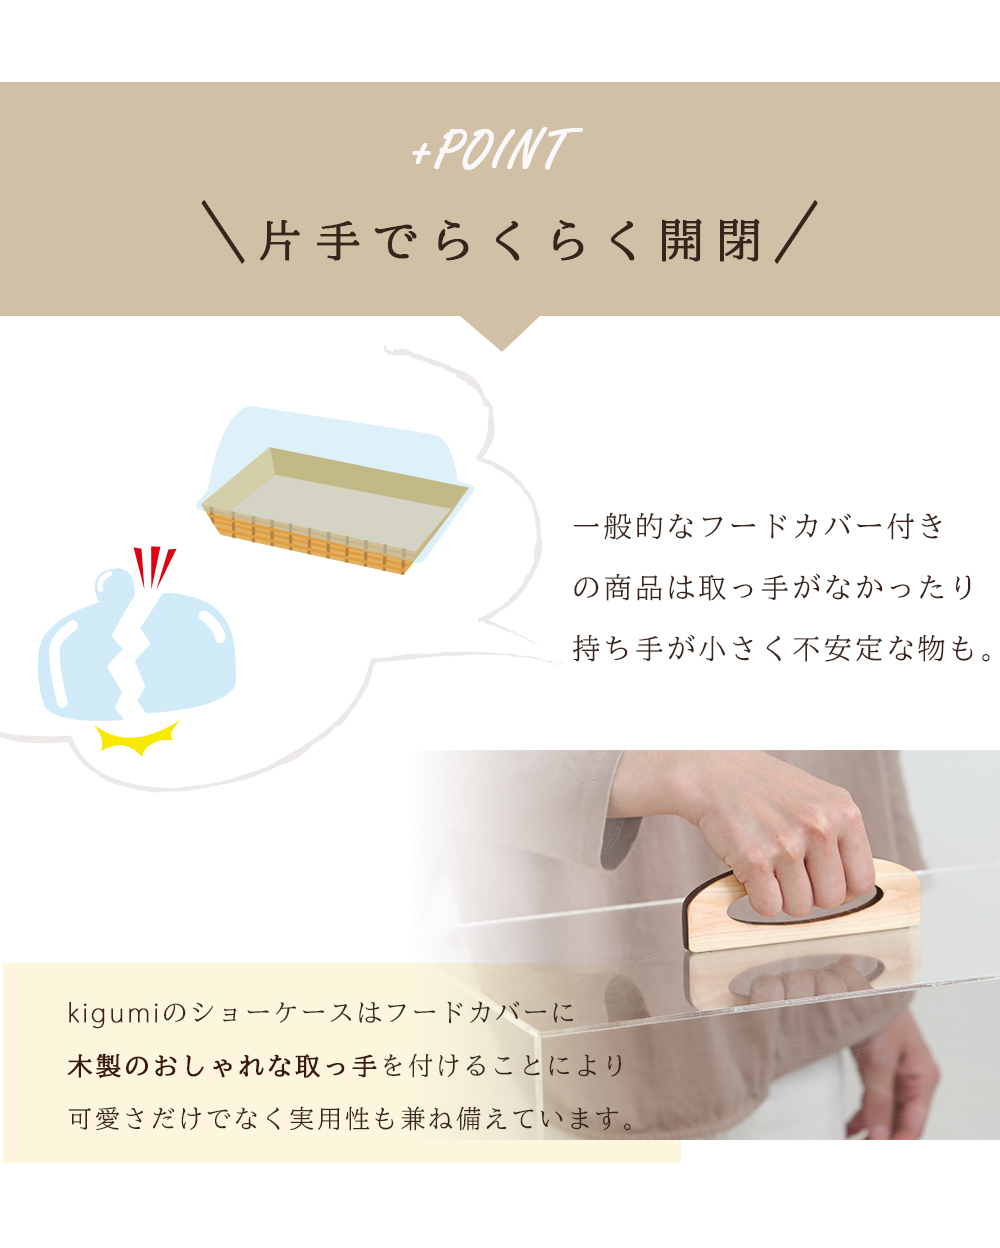 ショーケース S 日本製 ケーキディスプレイ 食品 お菓子 ケーキ台